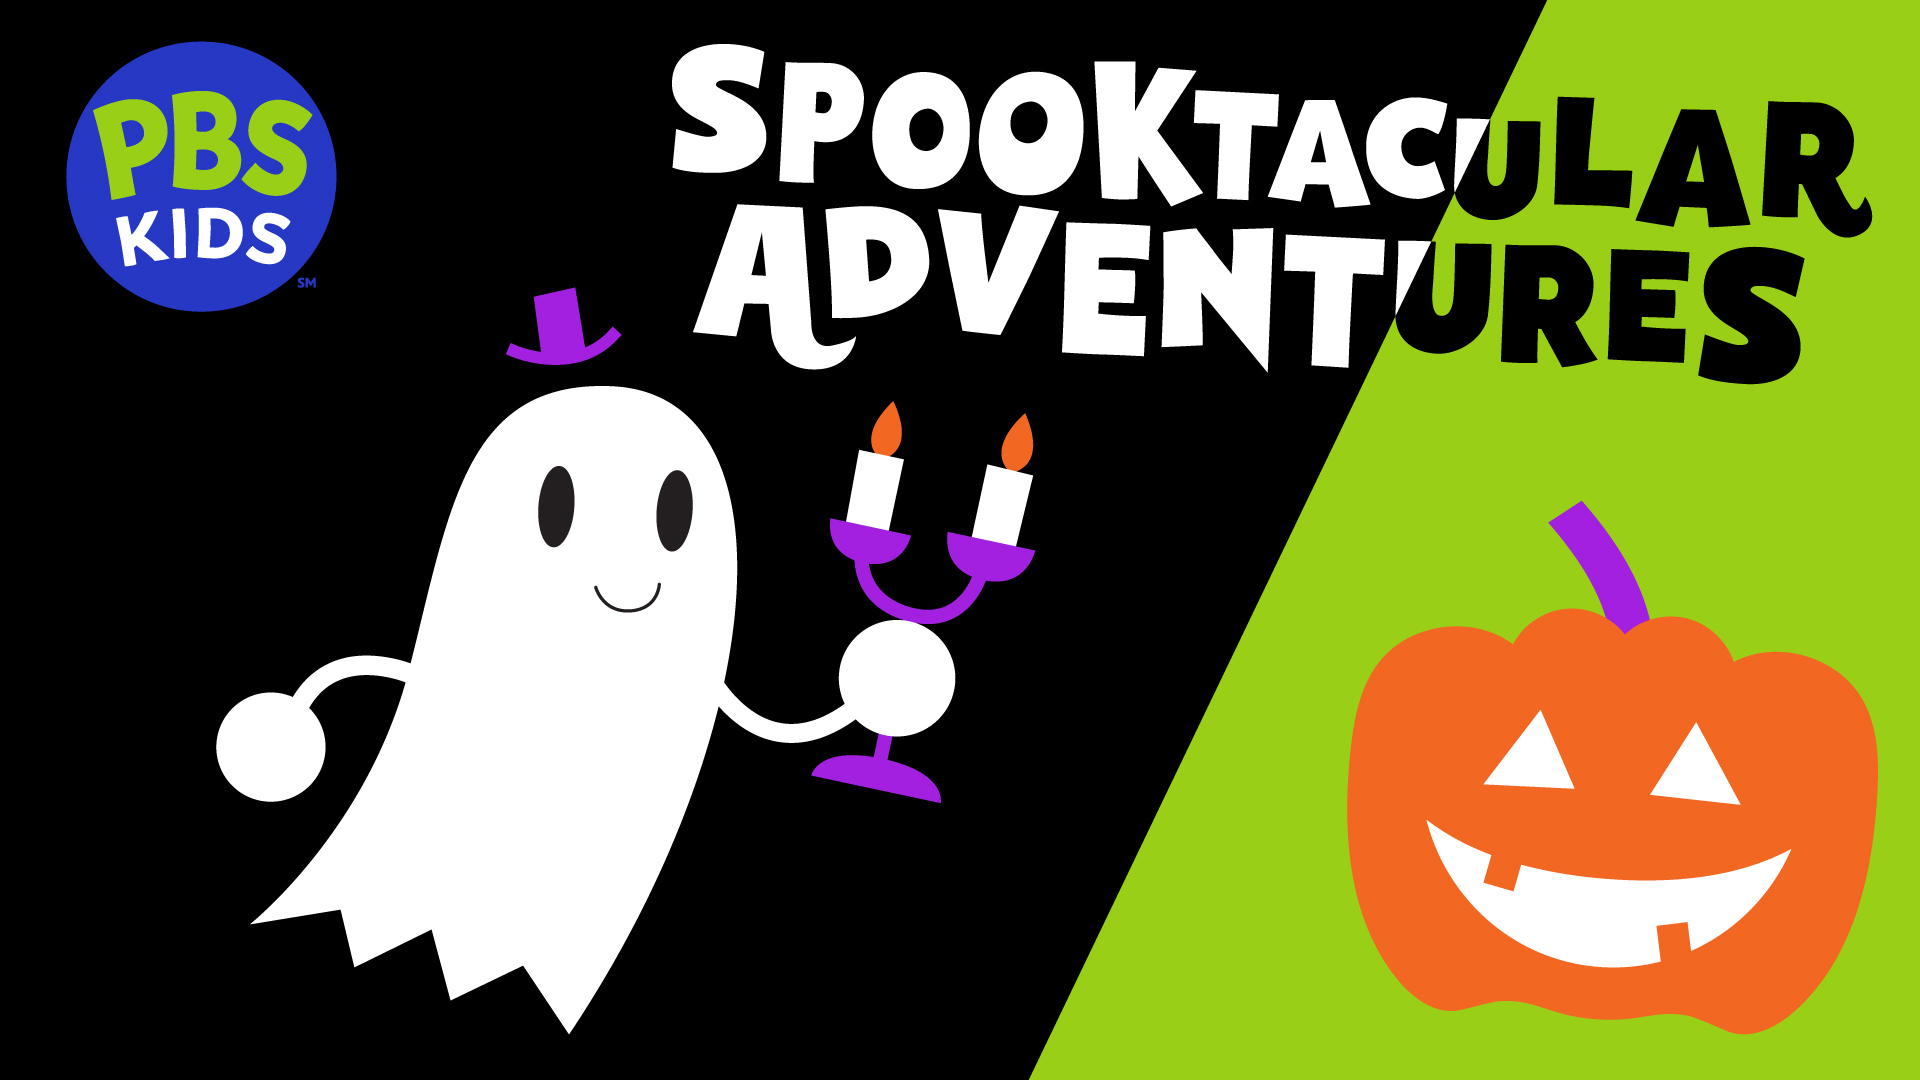 PBS KIDS Spooktacular Adventures